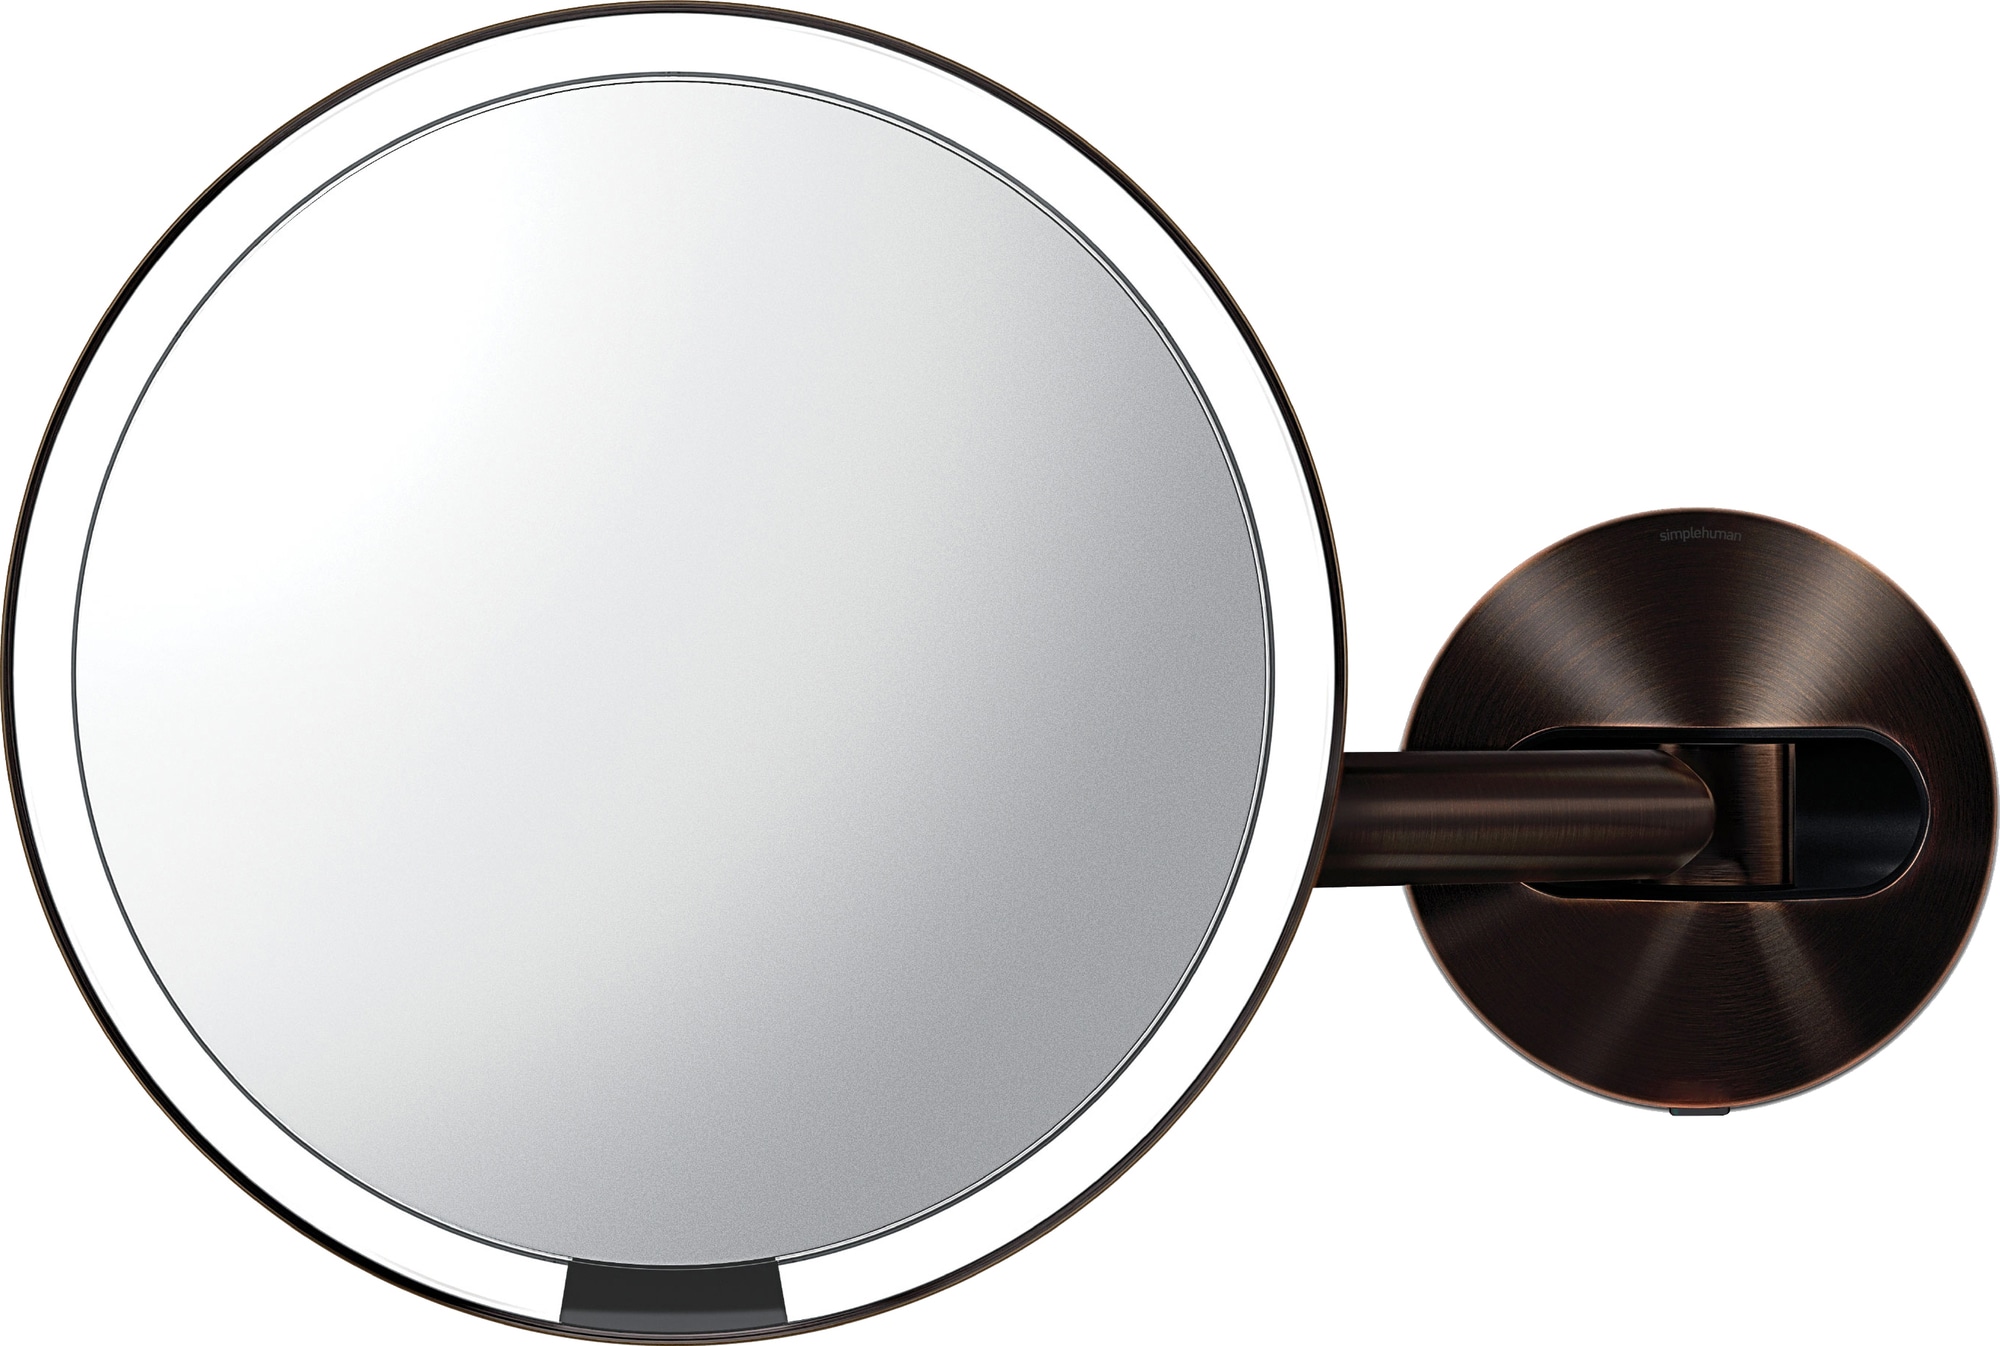 #1 på vores liste over kosmetikspejle er Kosmetikspejl